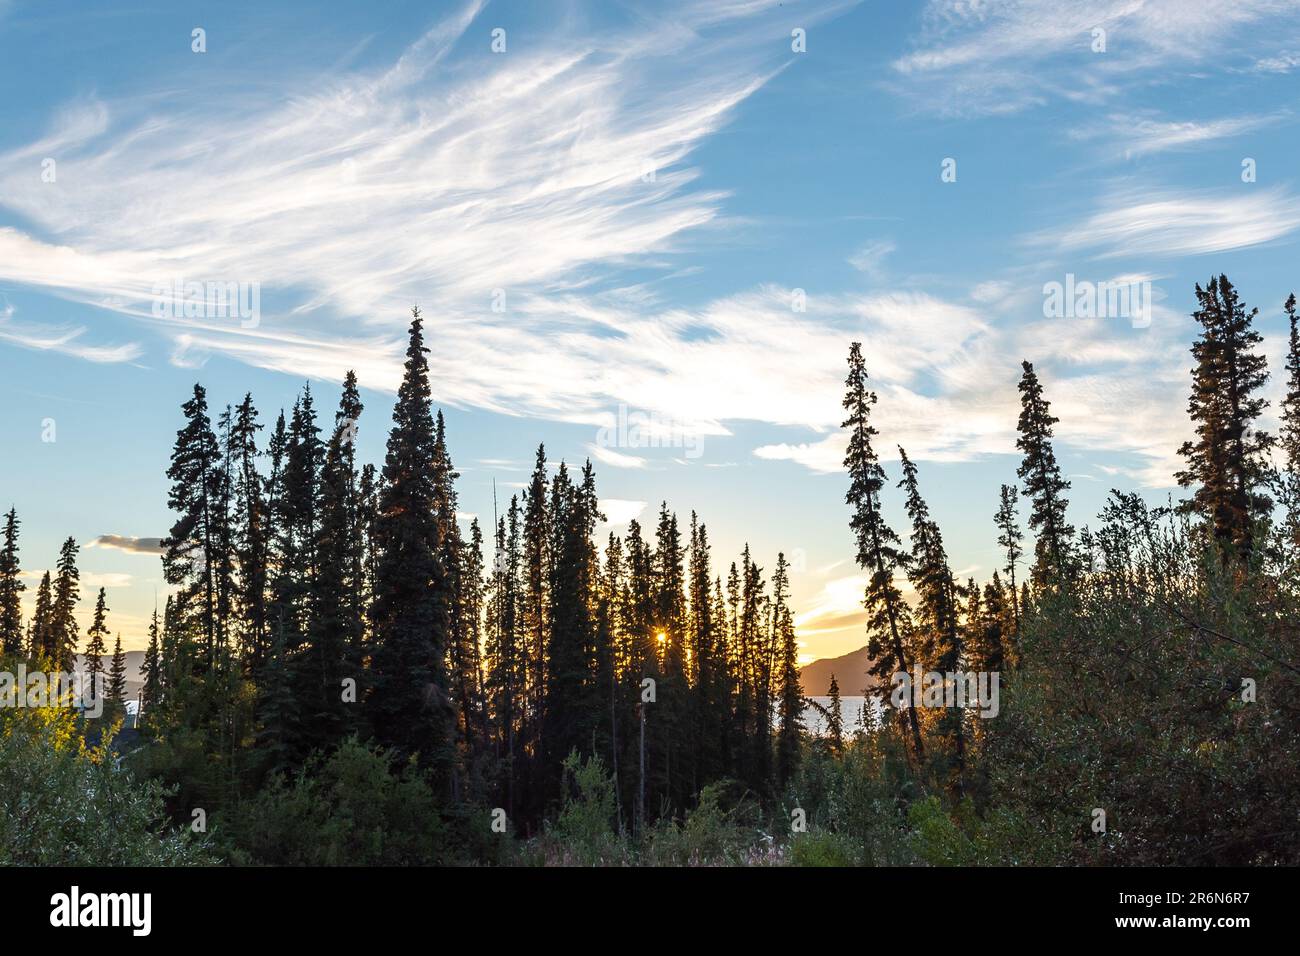 Vues estivales dans le nord du Canada avec des formations de nuages uniques et magnifiques prises dans la forêt boréale du territoire du Yukon, dans la région arctique près de l'Alaska. Banque D'Images